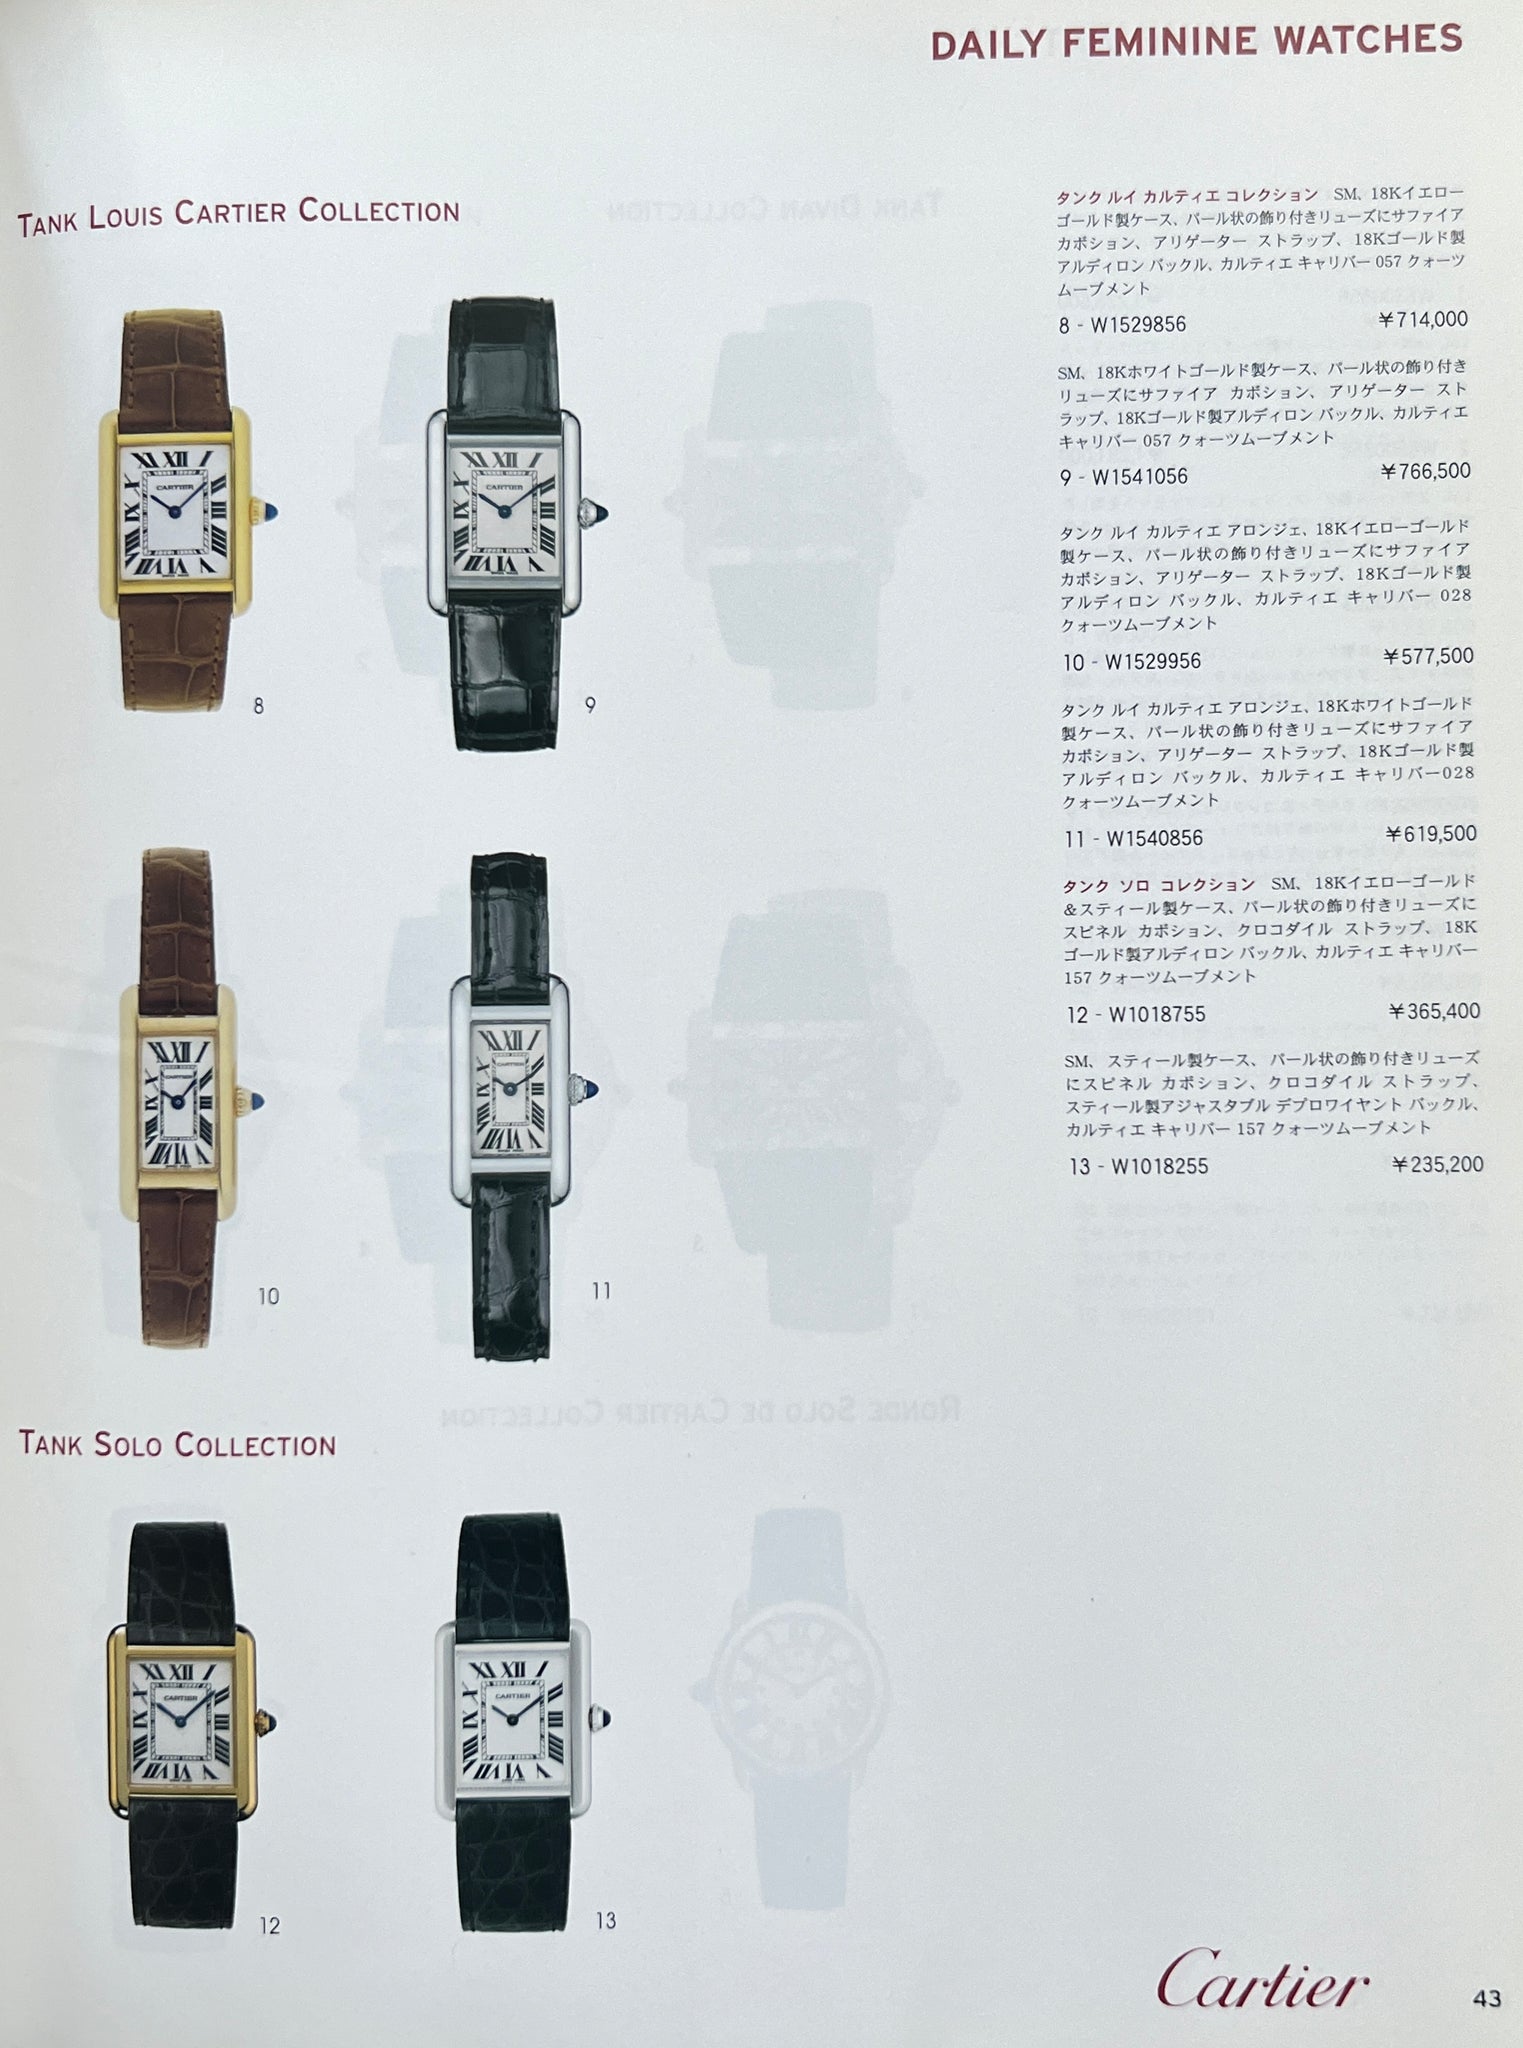 2008 Cartier Japan catalogue - A page showing that Tank Louis Cartier includes Tank Louis Allongée